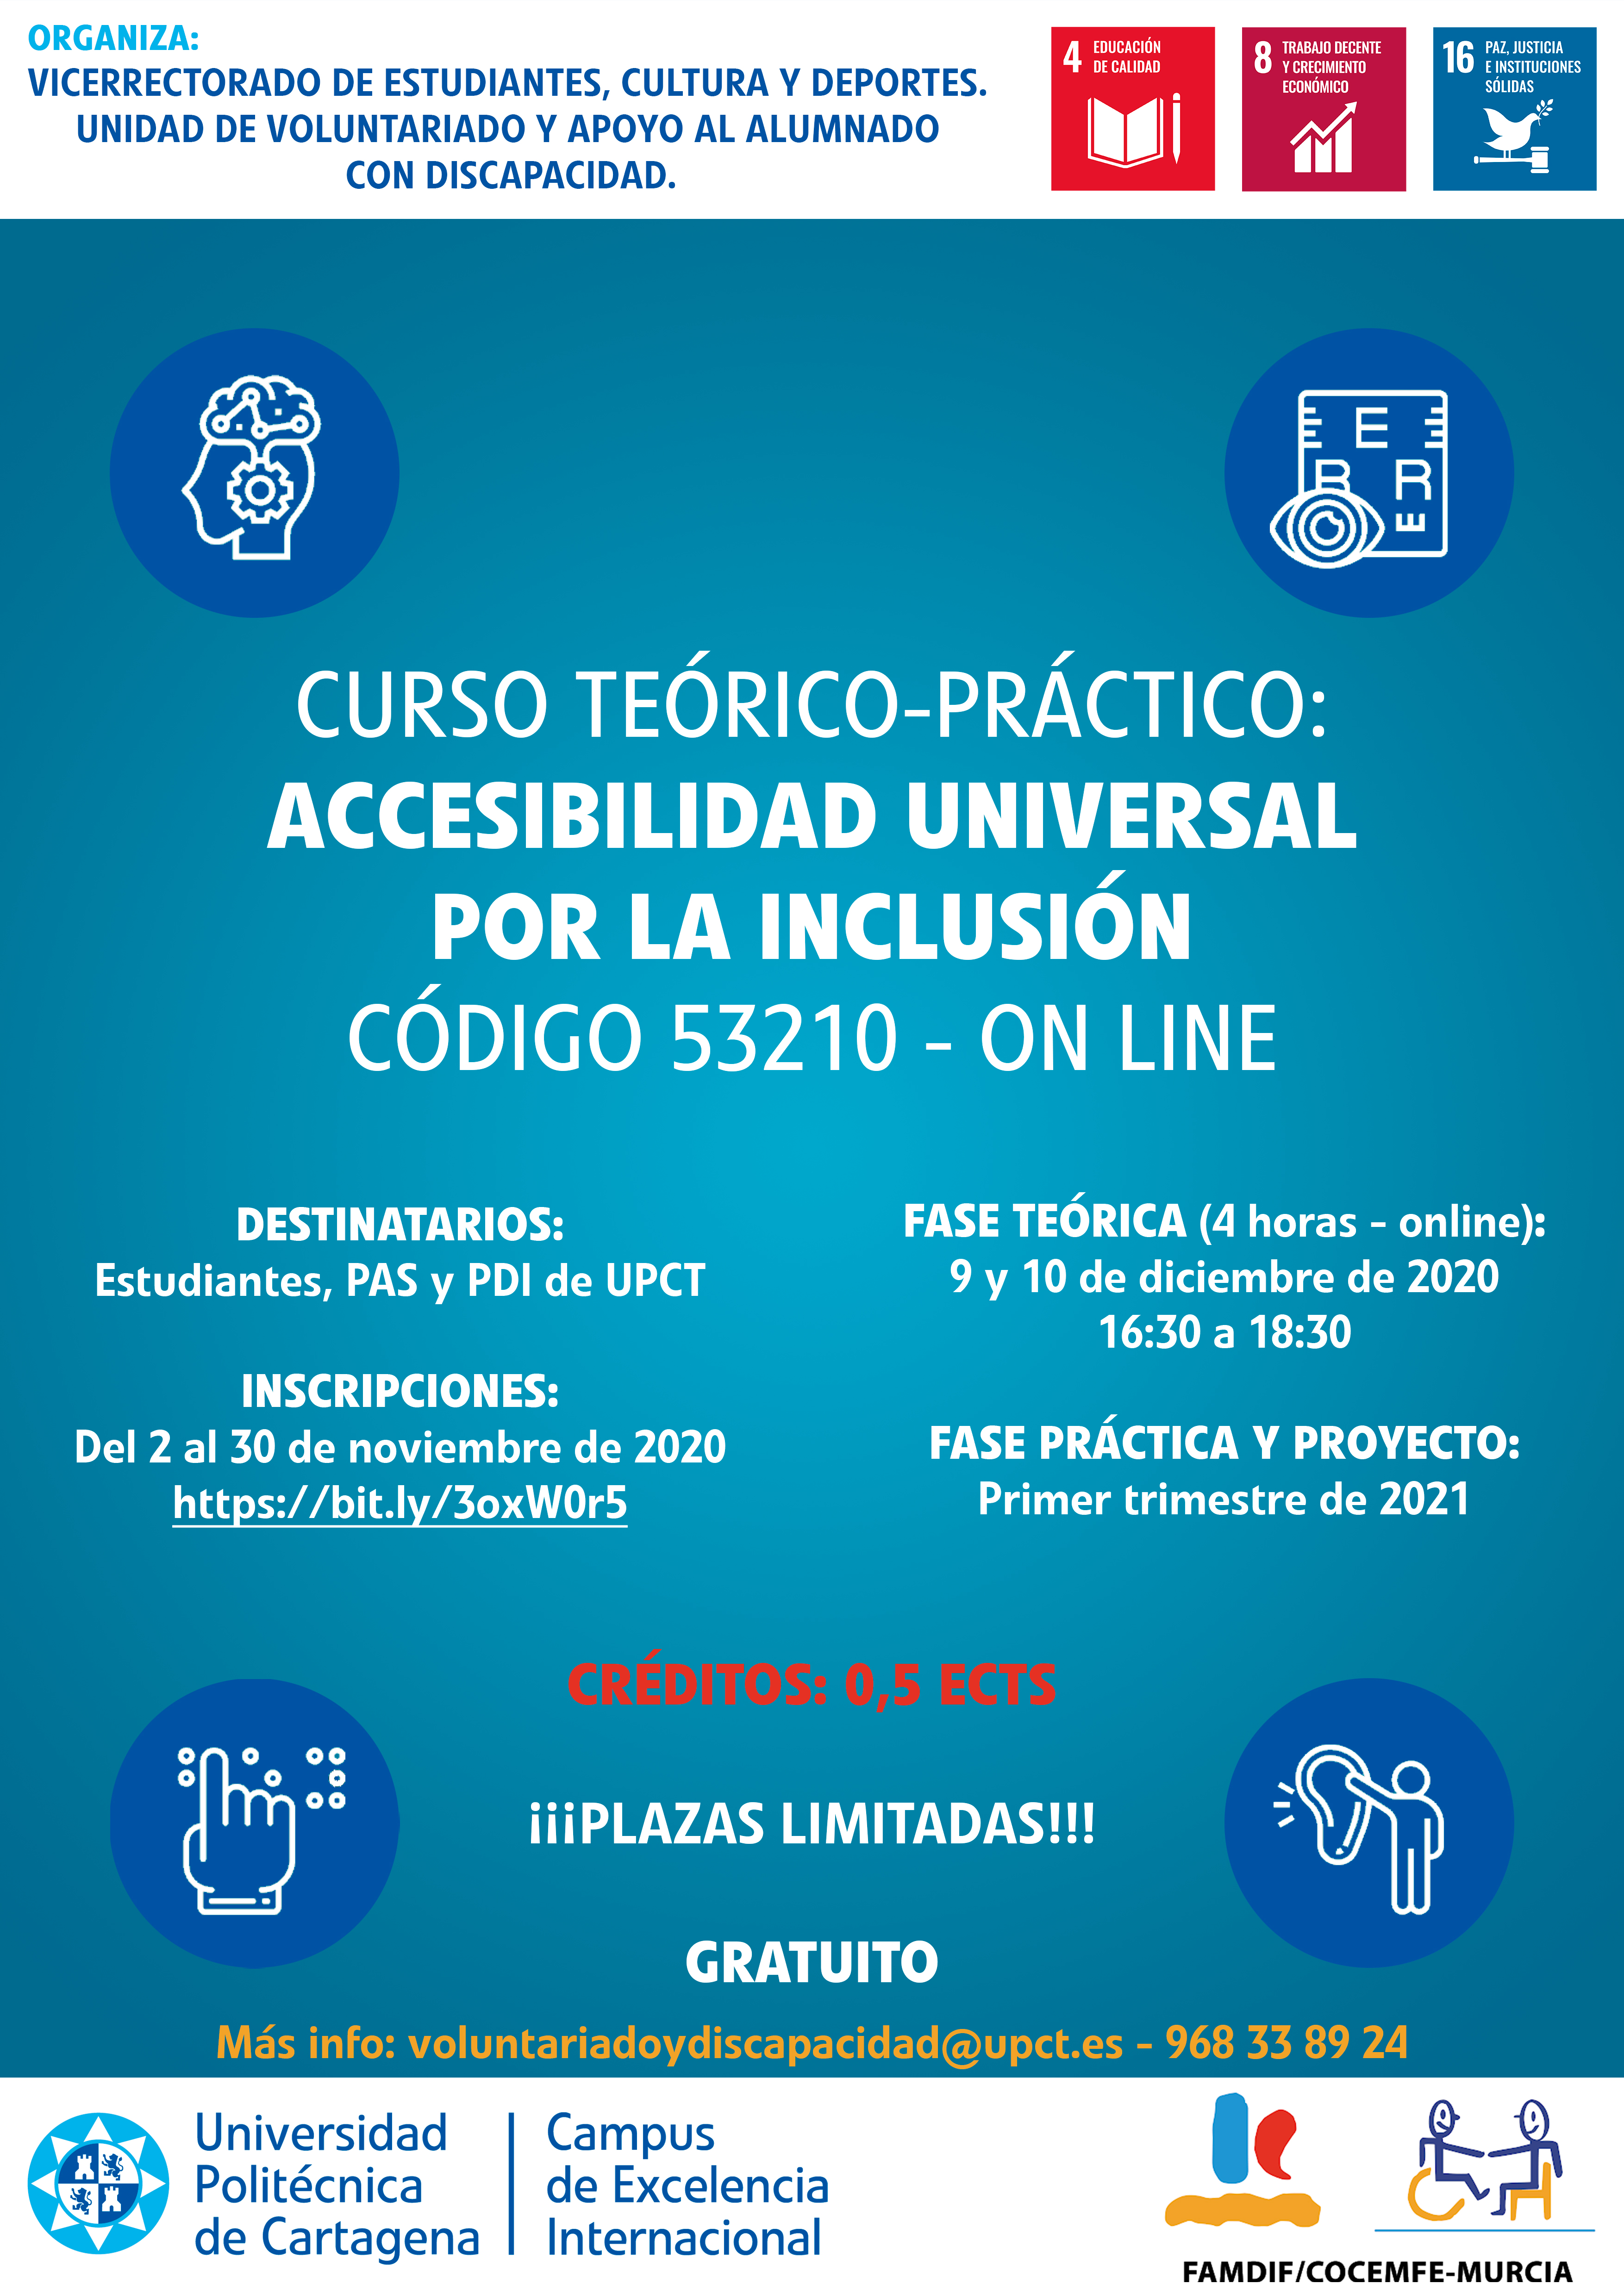 foto: Curso teórico-práctico: Accesibilidad universal por la inclusión